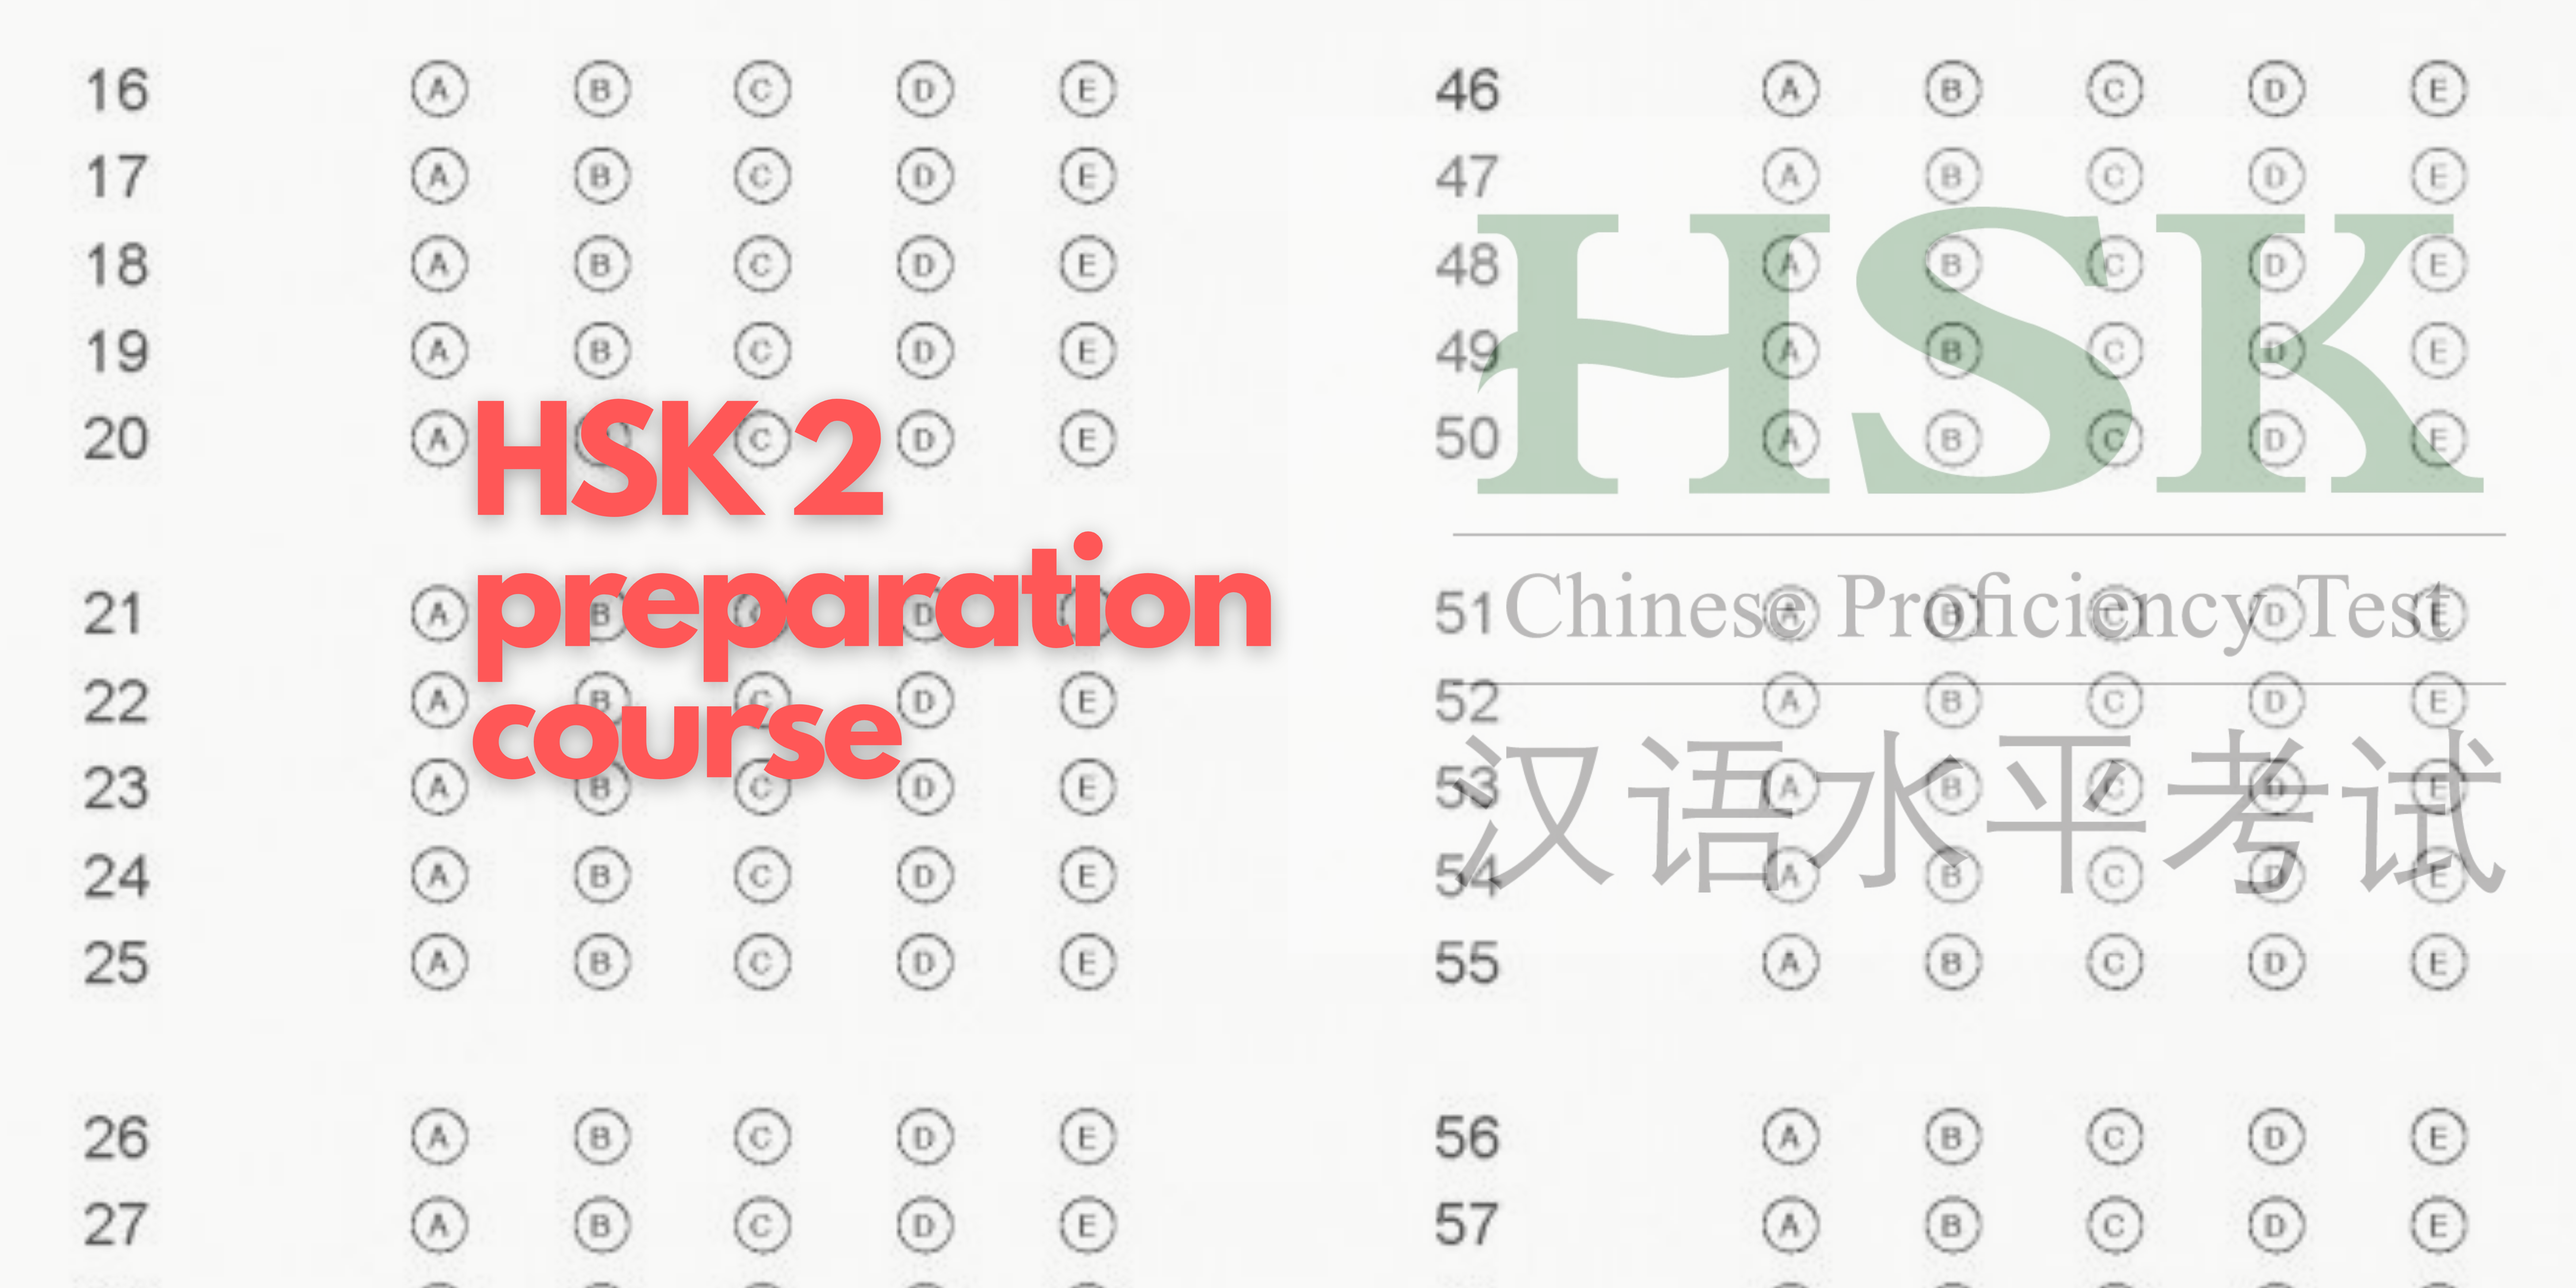 HSK 2 preparation course